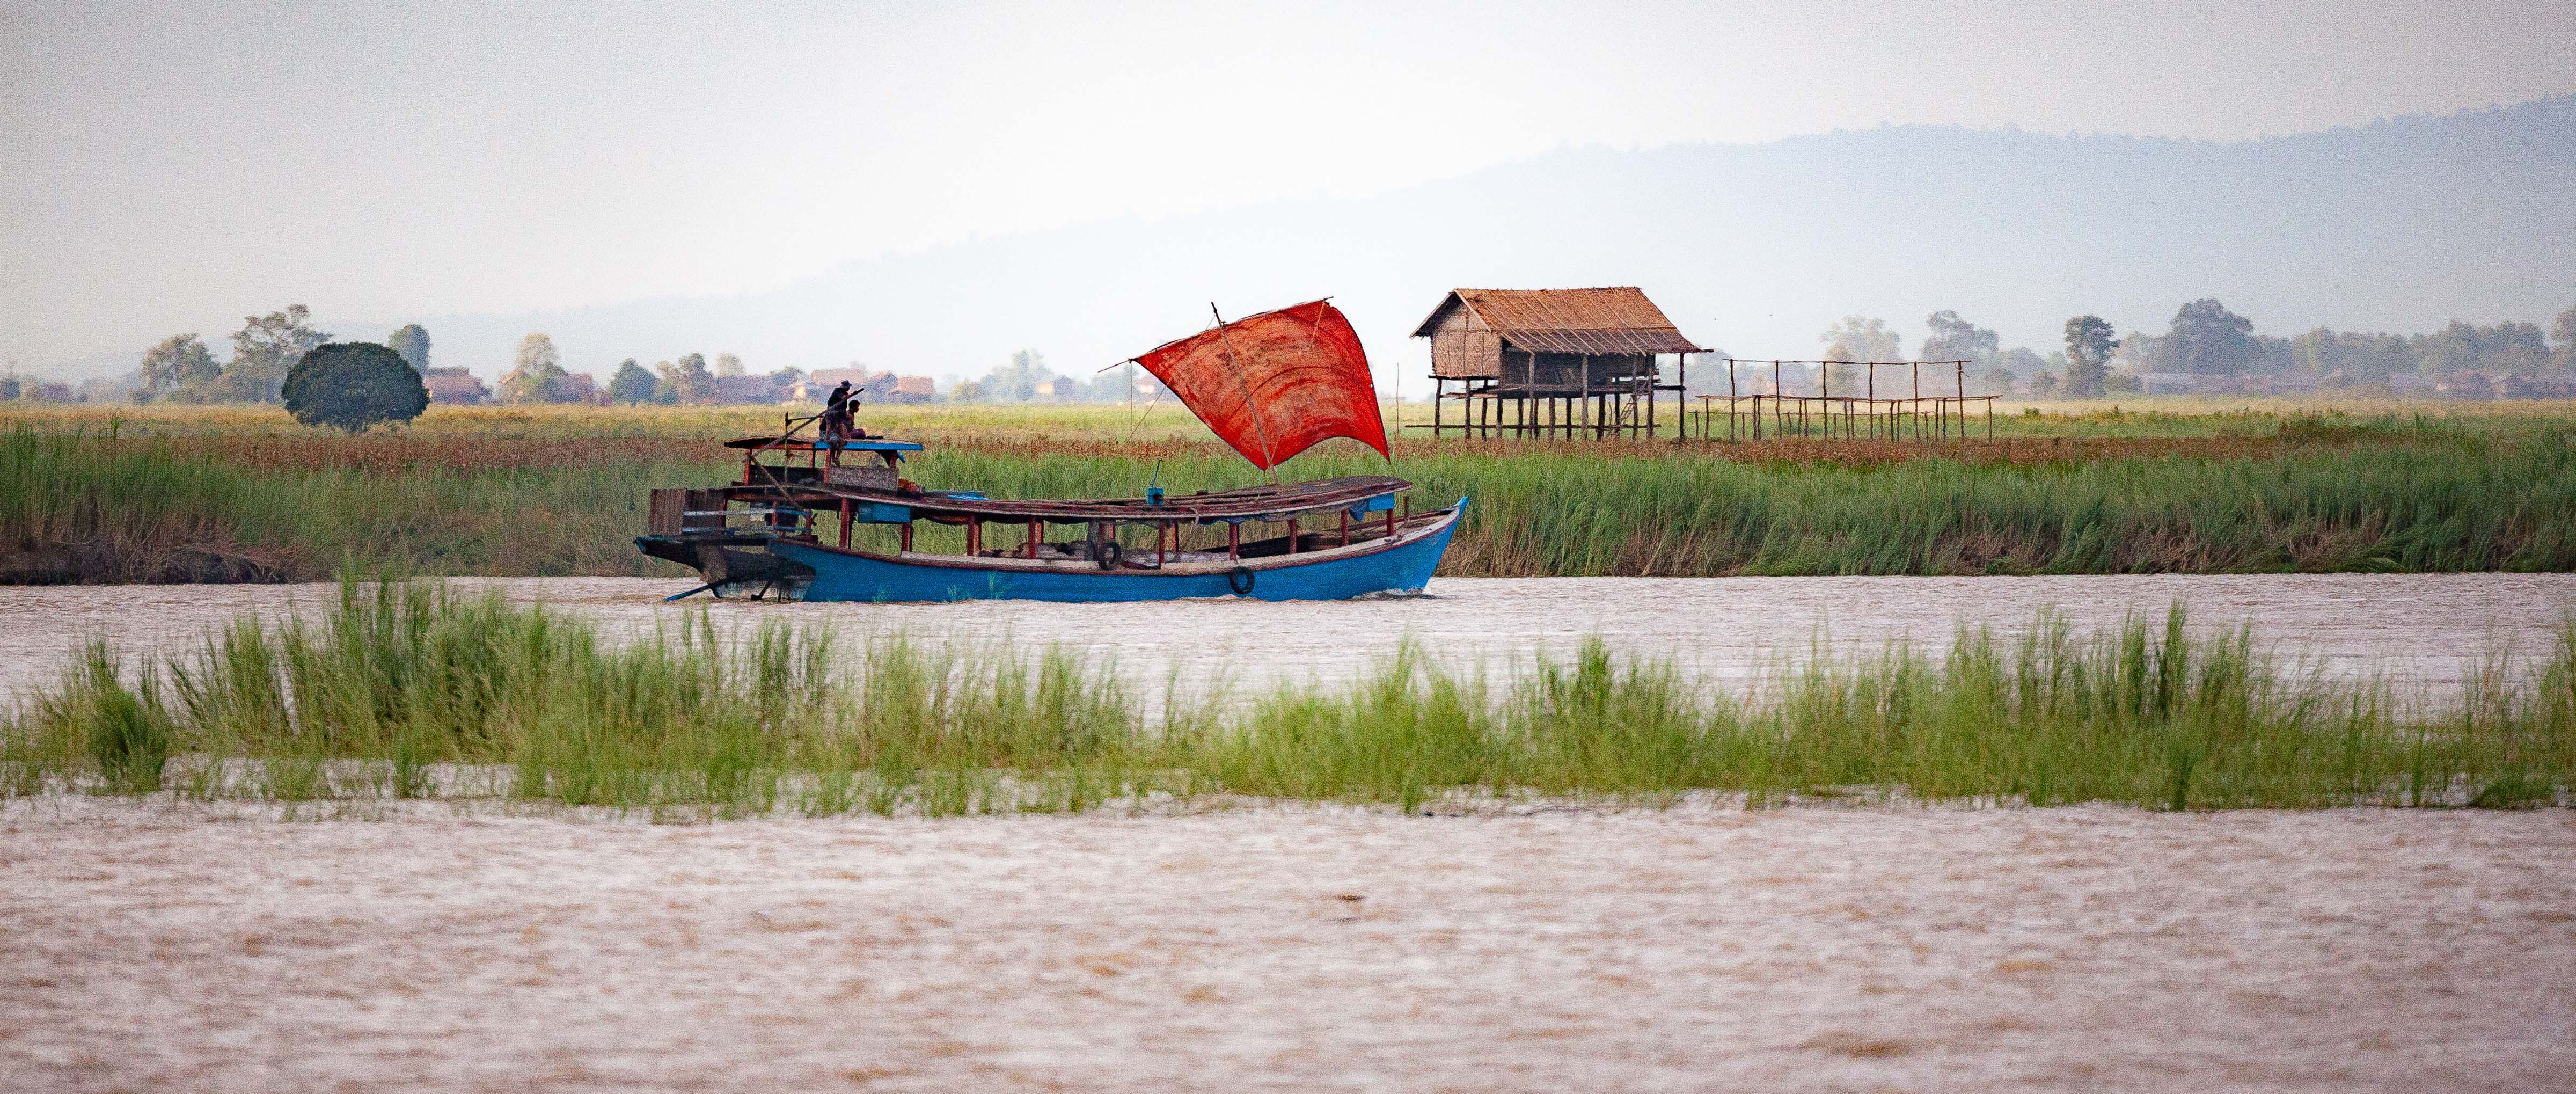 Myanmar, Unknown Prov, Boat Scene, 2009, IMG 3970